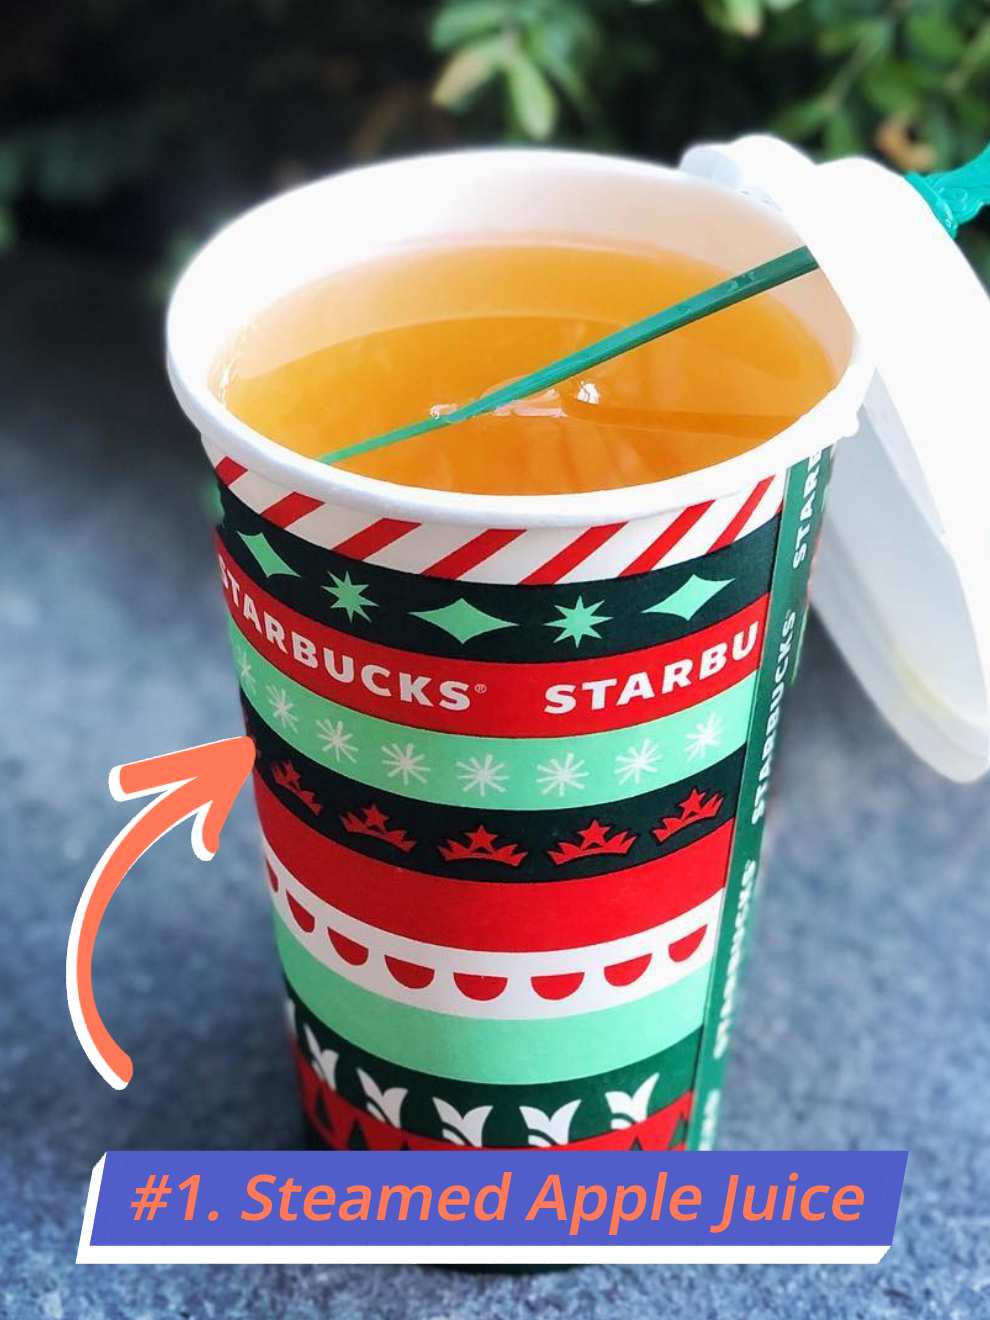 Starbucks Steamed Apple Juice